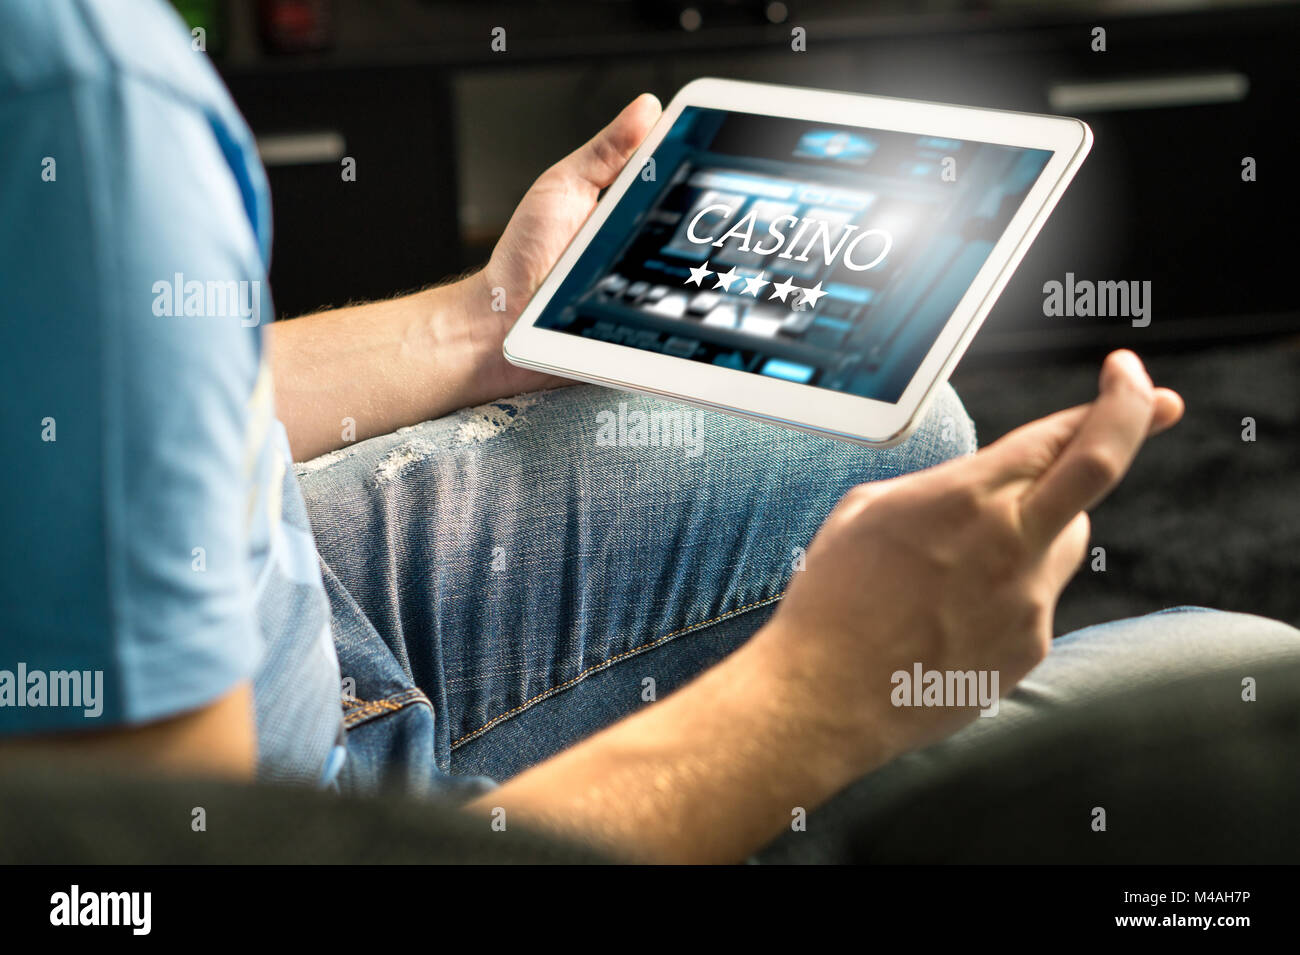 Aufgeregt Mann das Spielen in einem Online Casino mit Tablet Daumen wünschen und hoffen zu gewinnen. Slot machine App. Person, die Smart mobile Gerät. Stockfoto